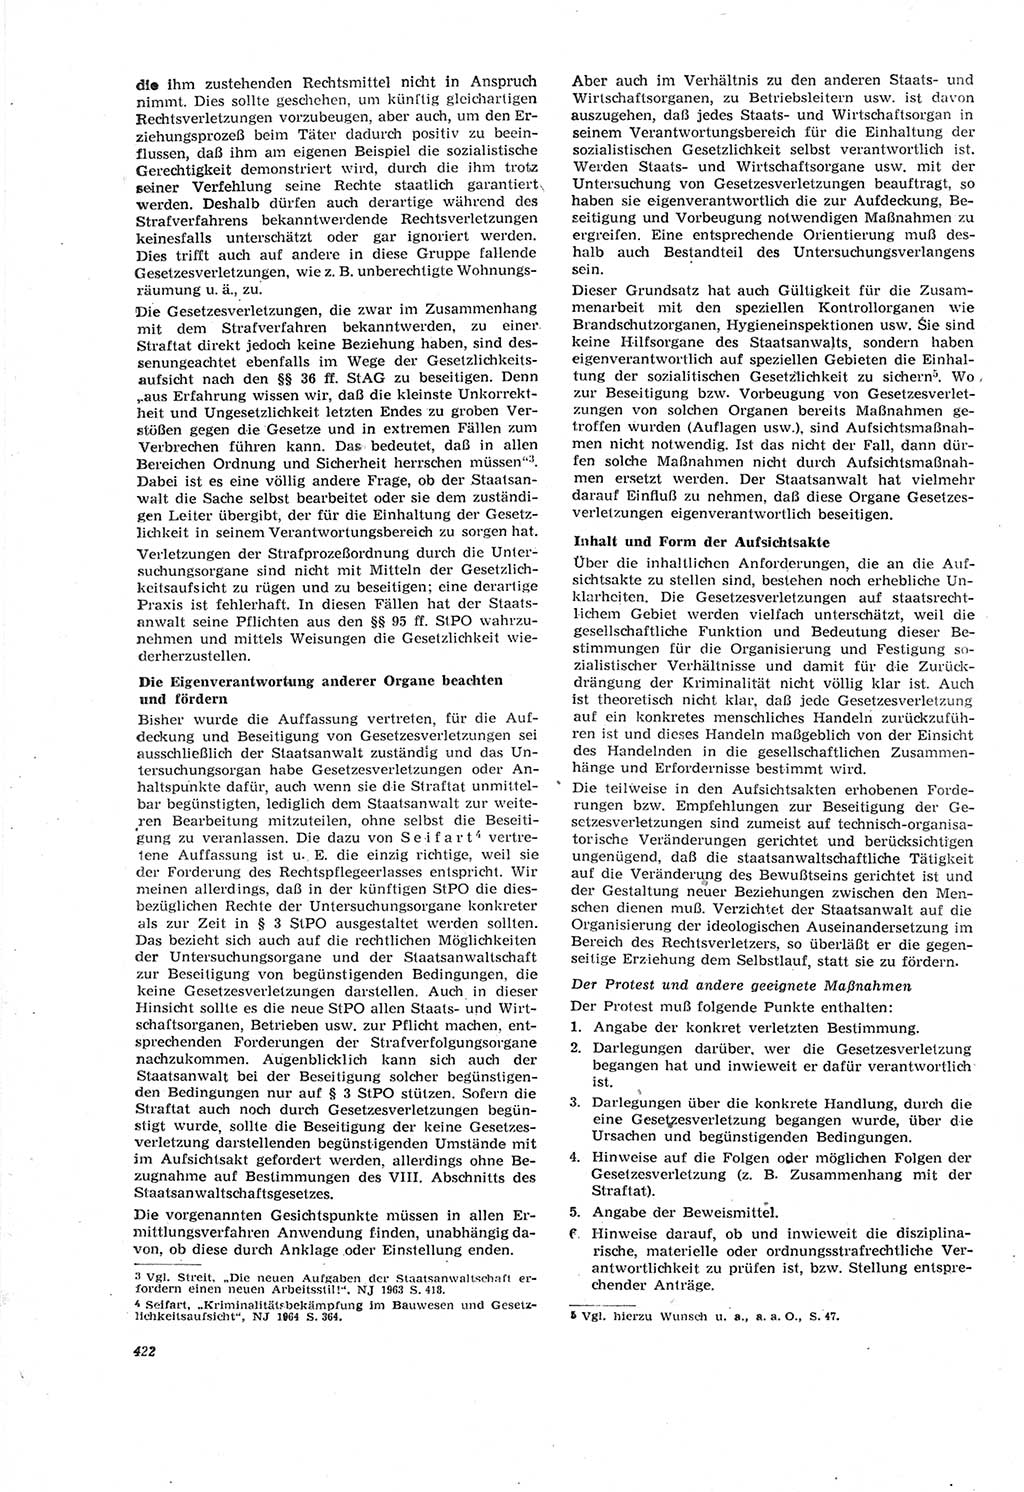 Neue Justiz (NJ), Zeitschrift für Recht und Rechtswissenschaft [Deutsche Demokratische Republik (DDR)], 18. Jahrgang 1964, Seite 422 (NJ DDR 1964, S. 422)